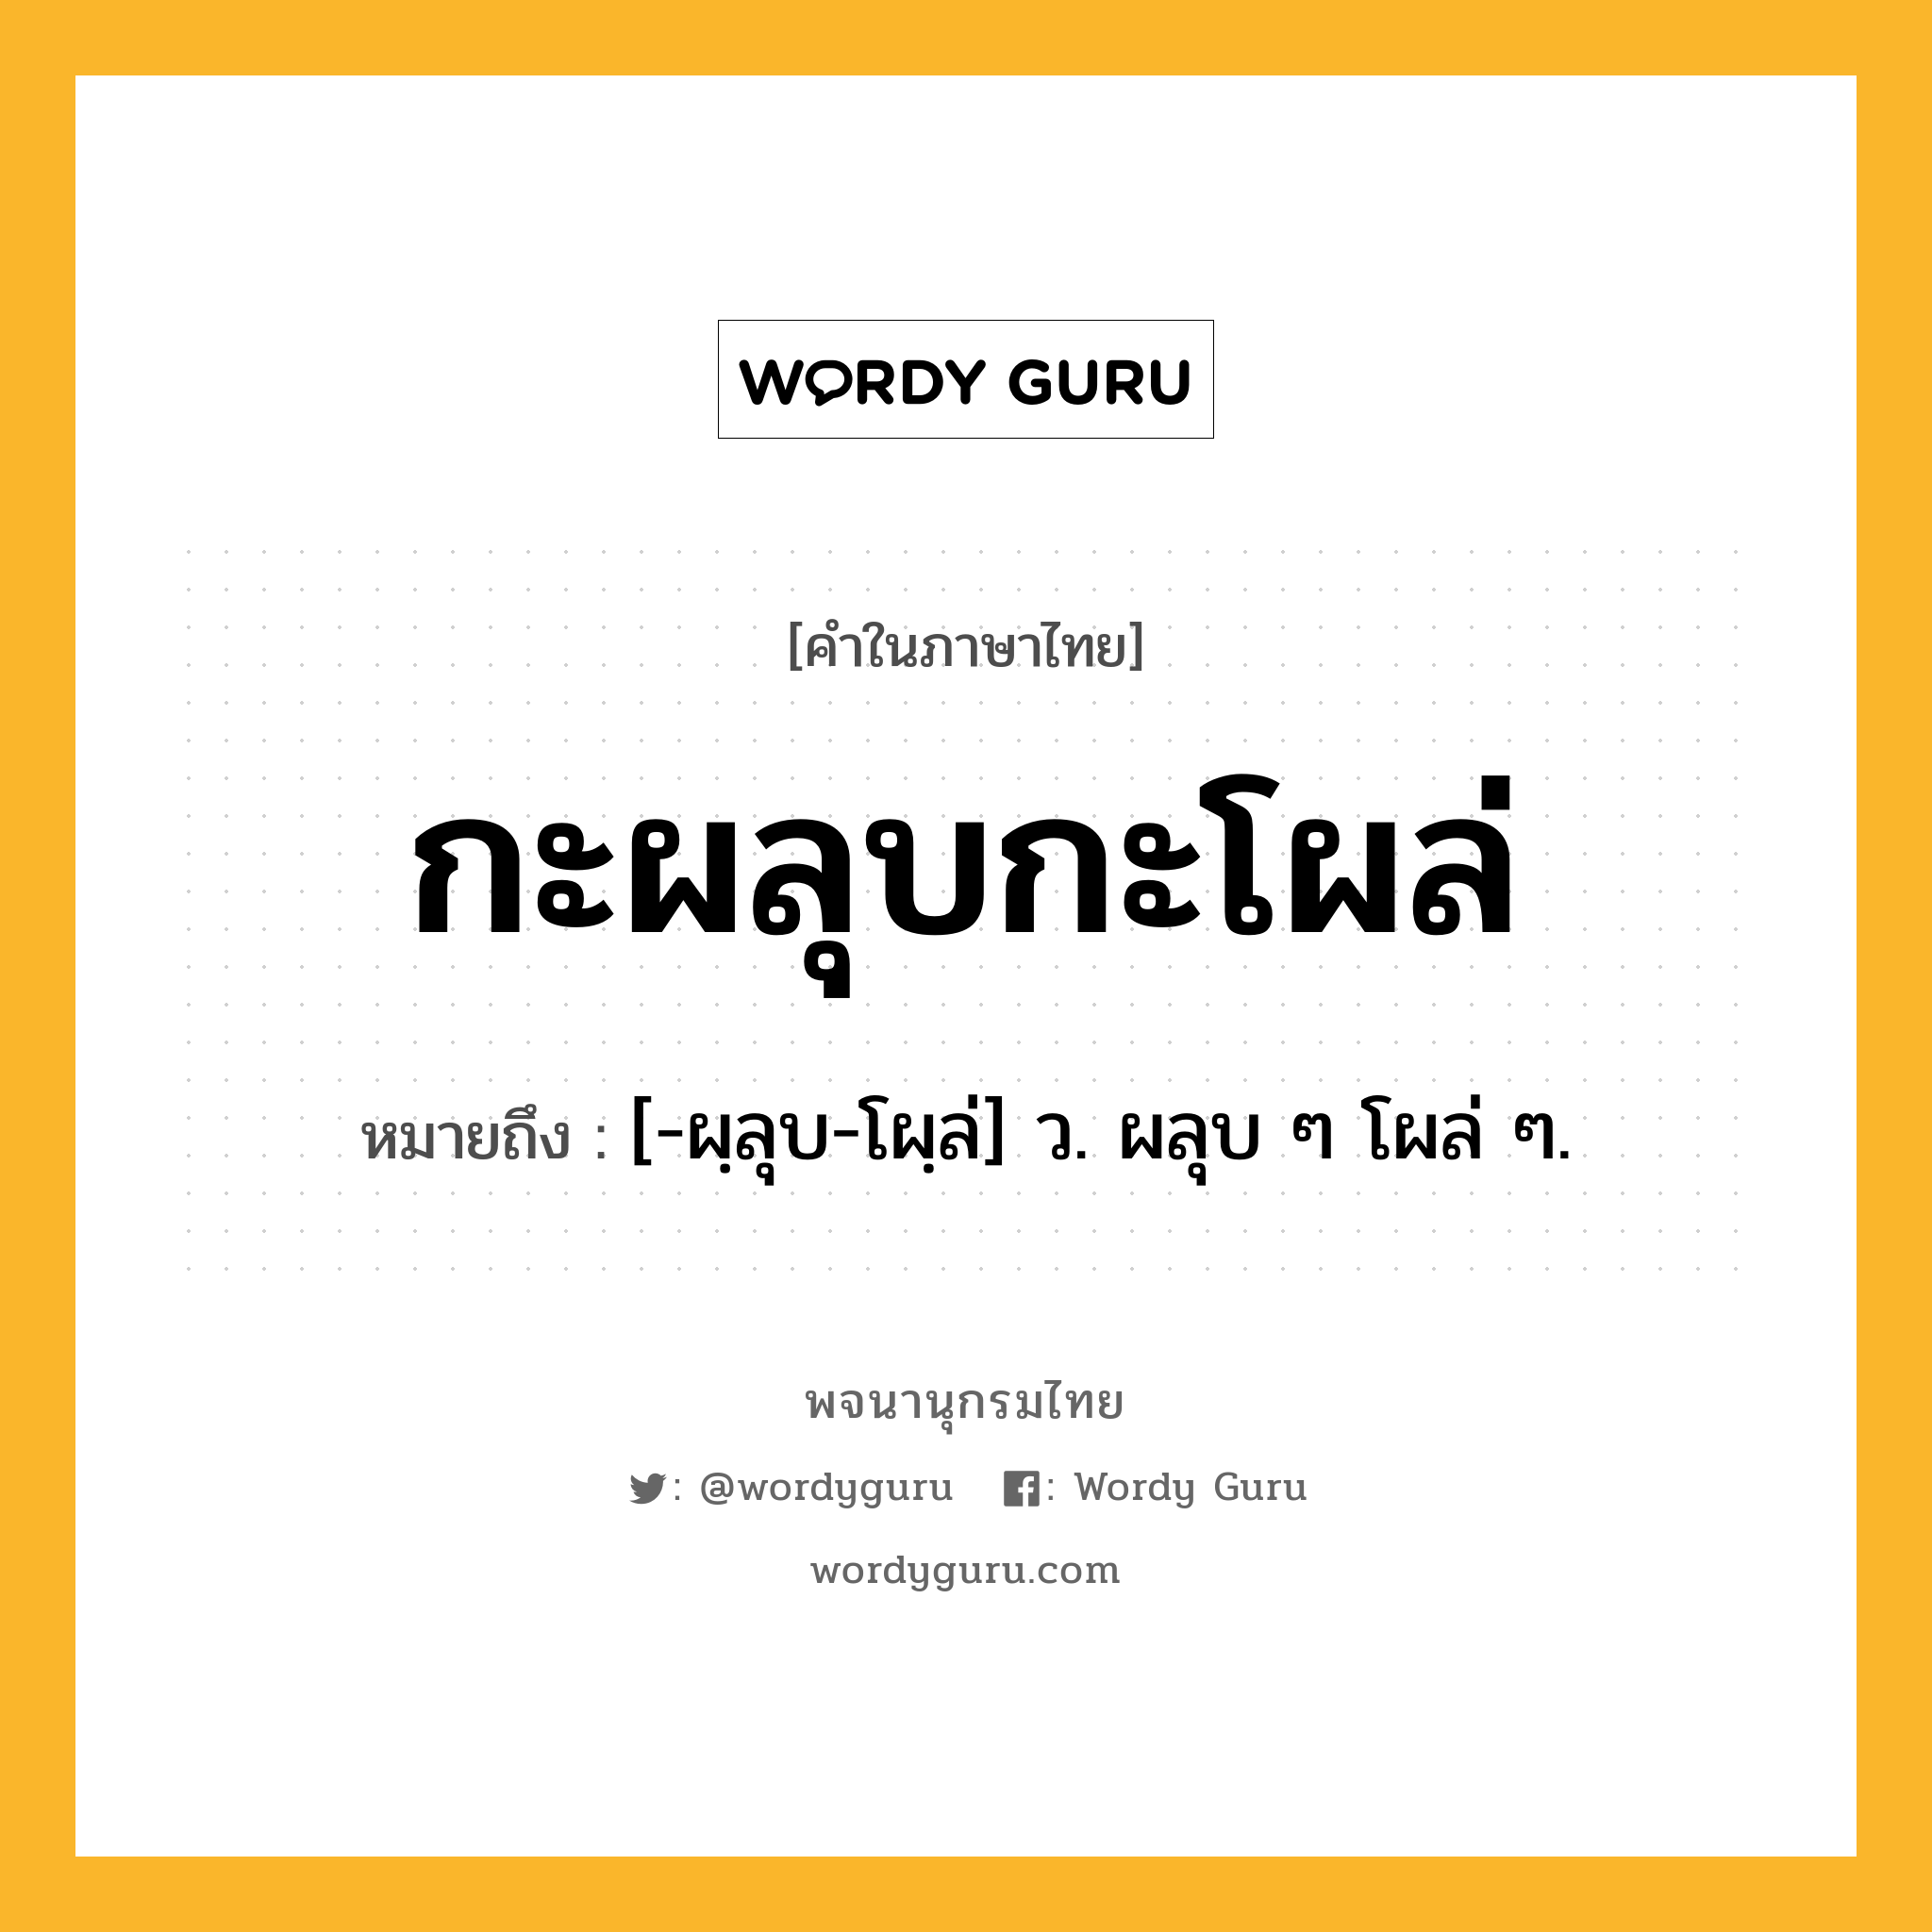 กะผลุบกะโผล่ ความหมาย หมายถึงอะไร?, คำในภาษาไทย กะผลุบกะโผล่ หมายถึง [-ผฺลุบ-โผฺล่] ว. ผลุบ ๆ โผล่ ๆ.